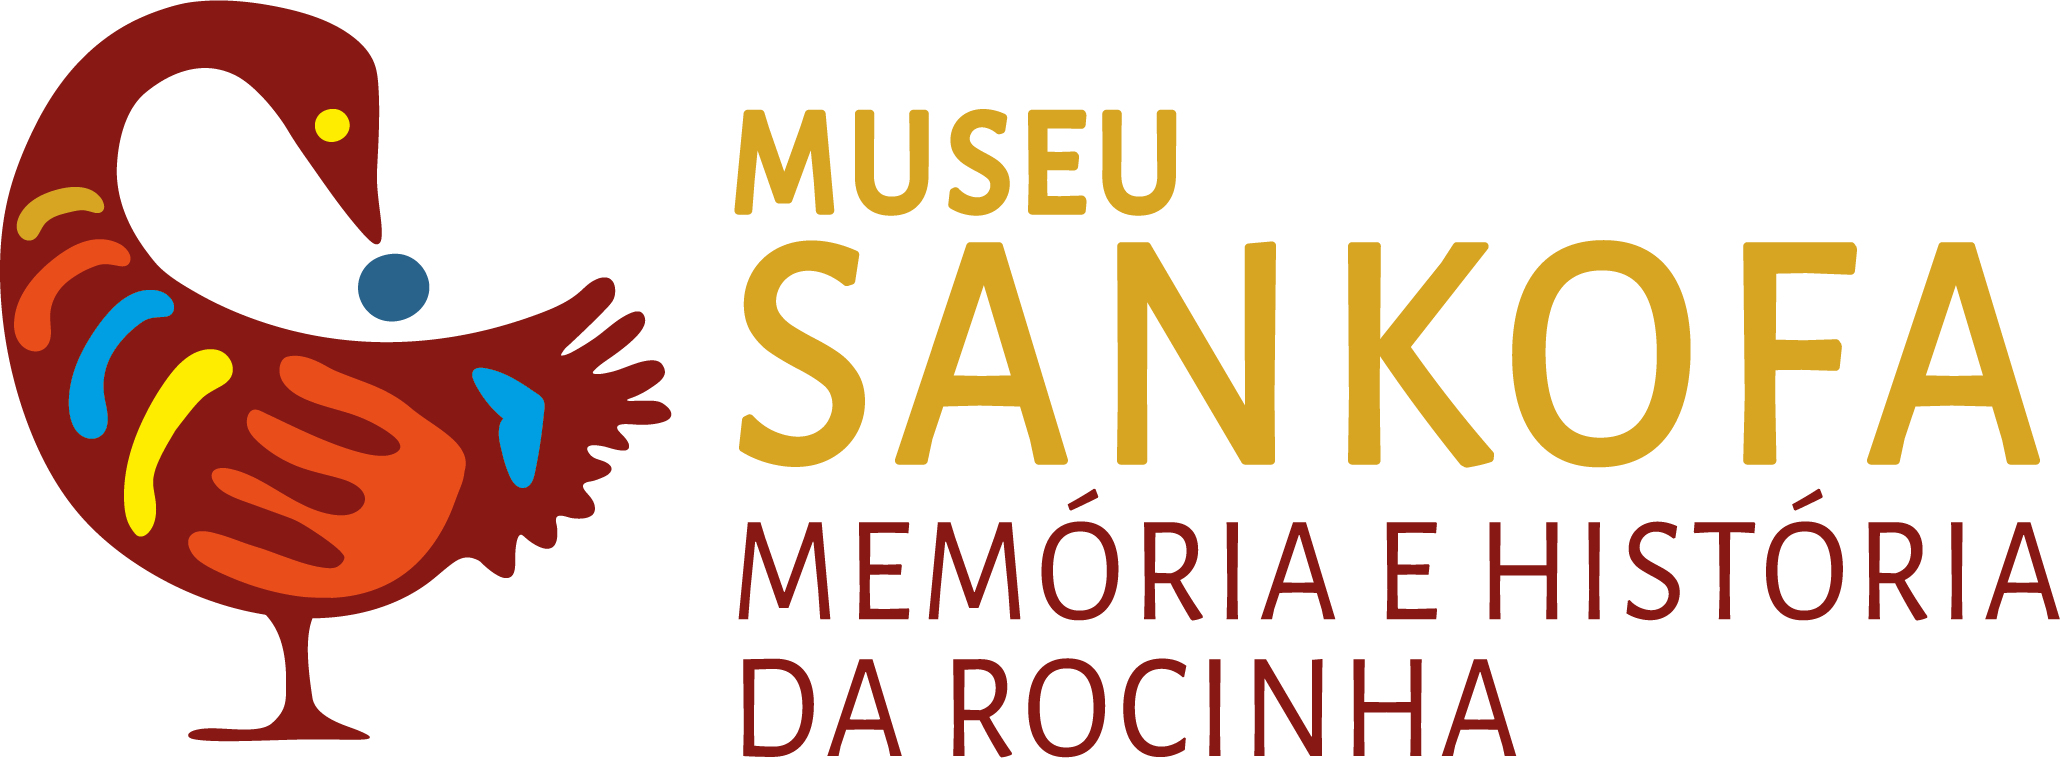 Marca do museu escrita Museu Sankofa Memória e história da Rocinha. O Símbolo do Sankofa é o desenho de um pássaro colorido, vermelho escuro com manchas azuis, amarelas e laranjas, de lado, com o olho amarelo e um círculo azul em sua boca. Ele tem a cabeça voltada para trás e os pés virados para frente.